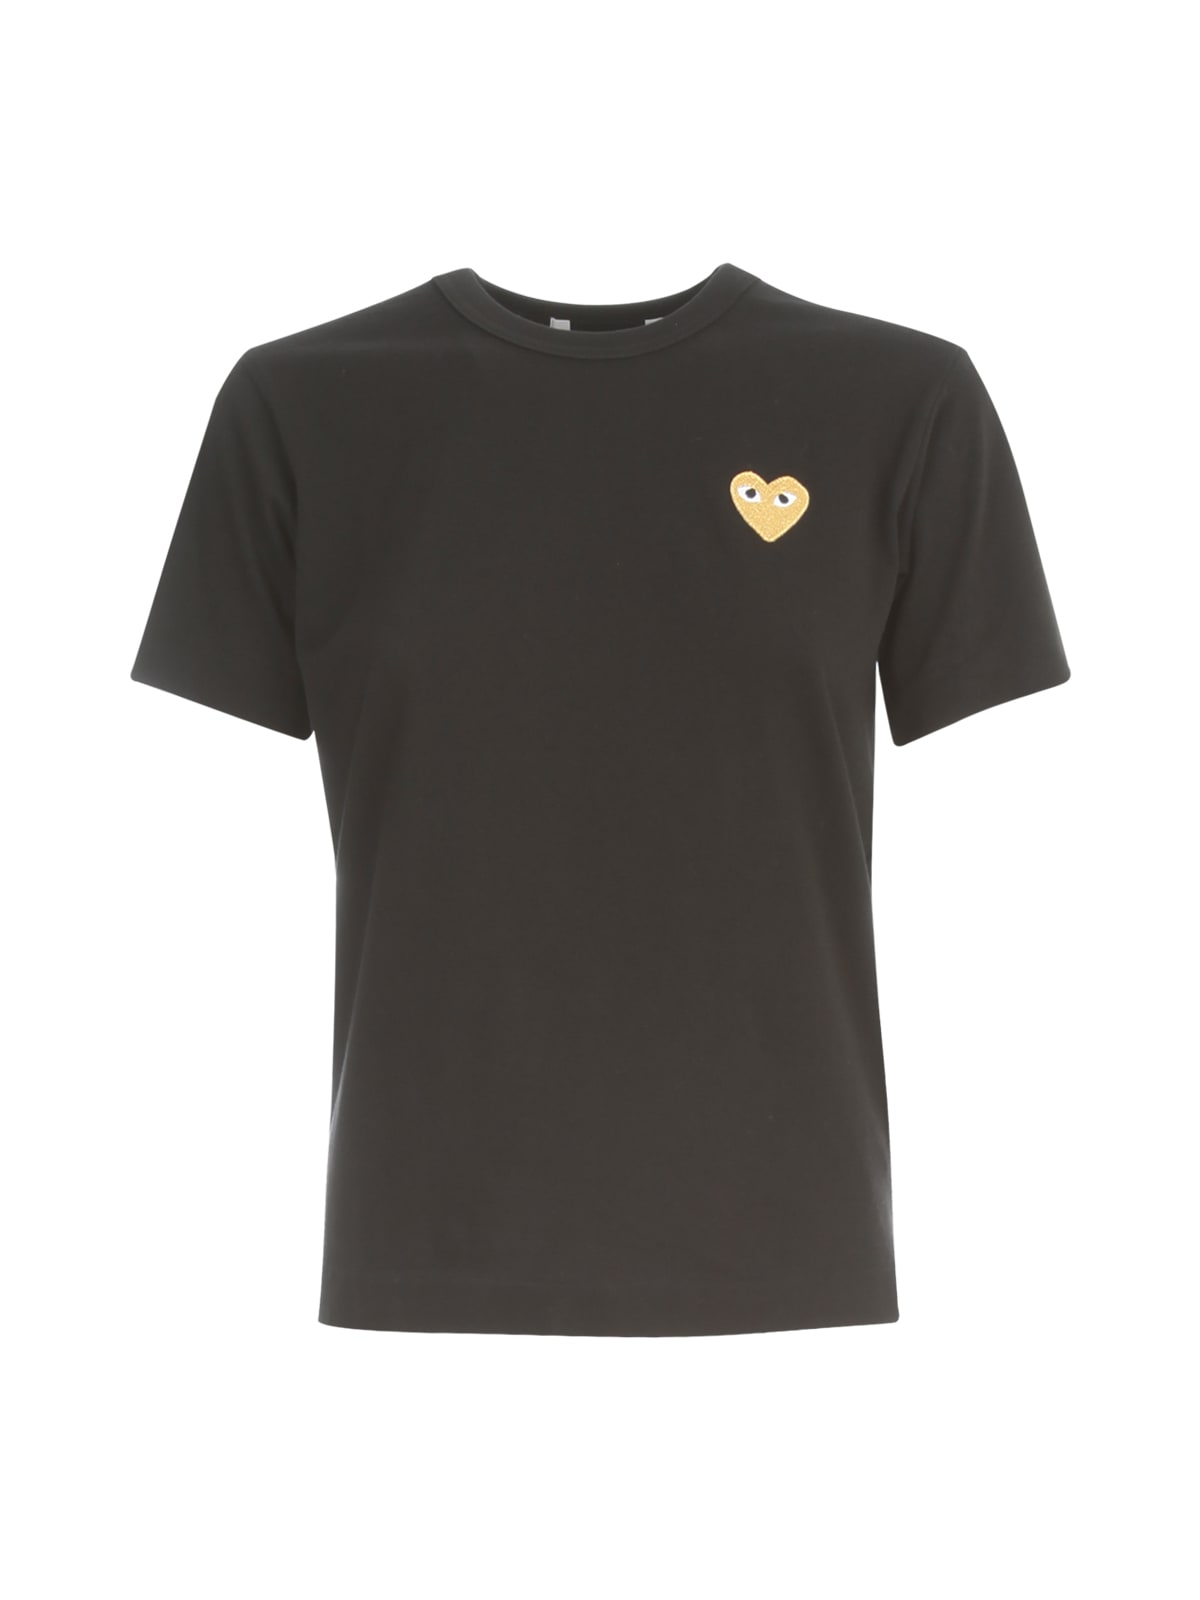 Comme des Garçons Play Play T-shirt Gold Heart